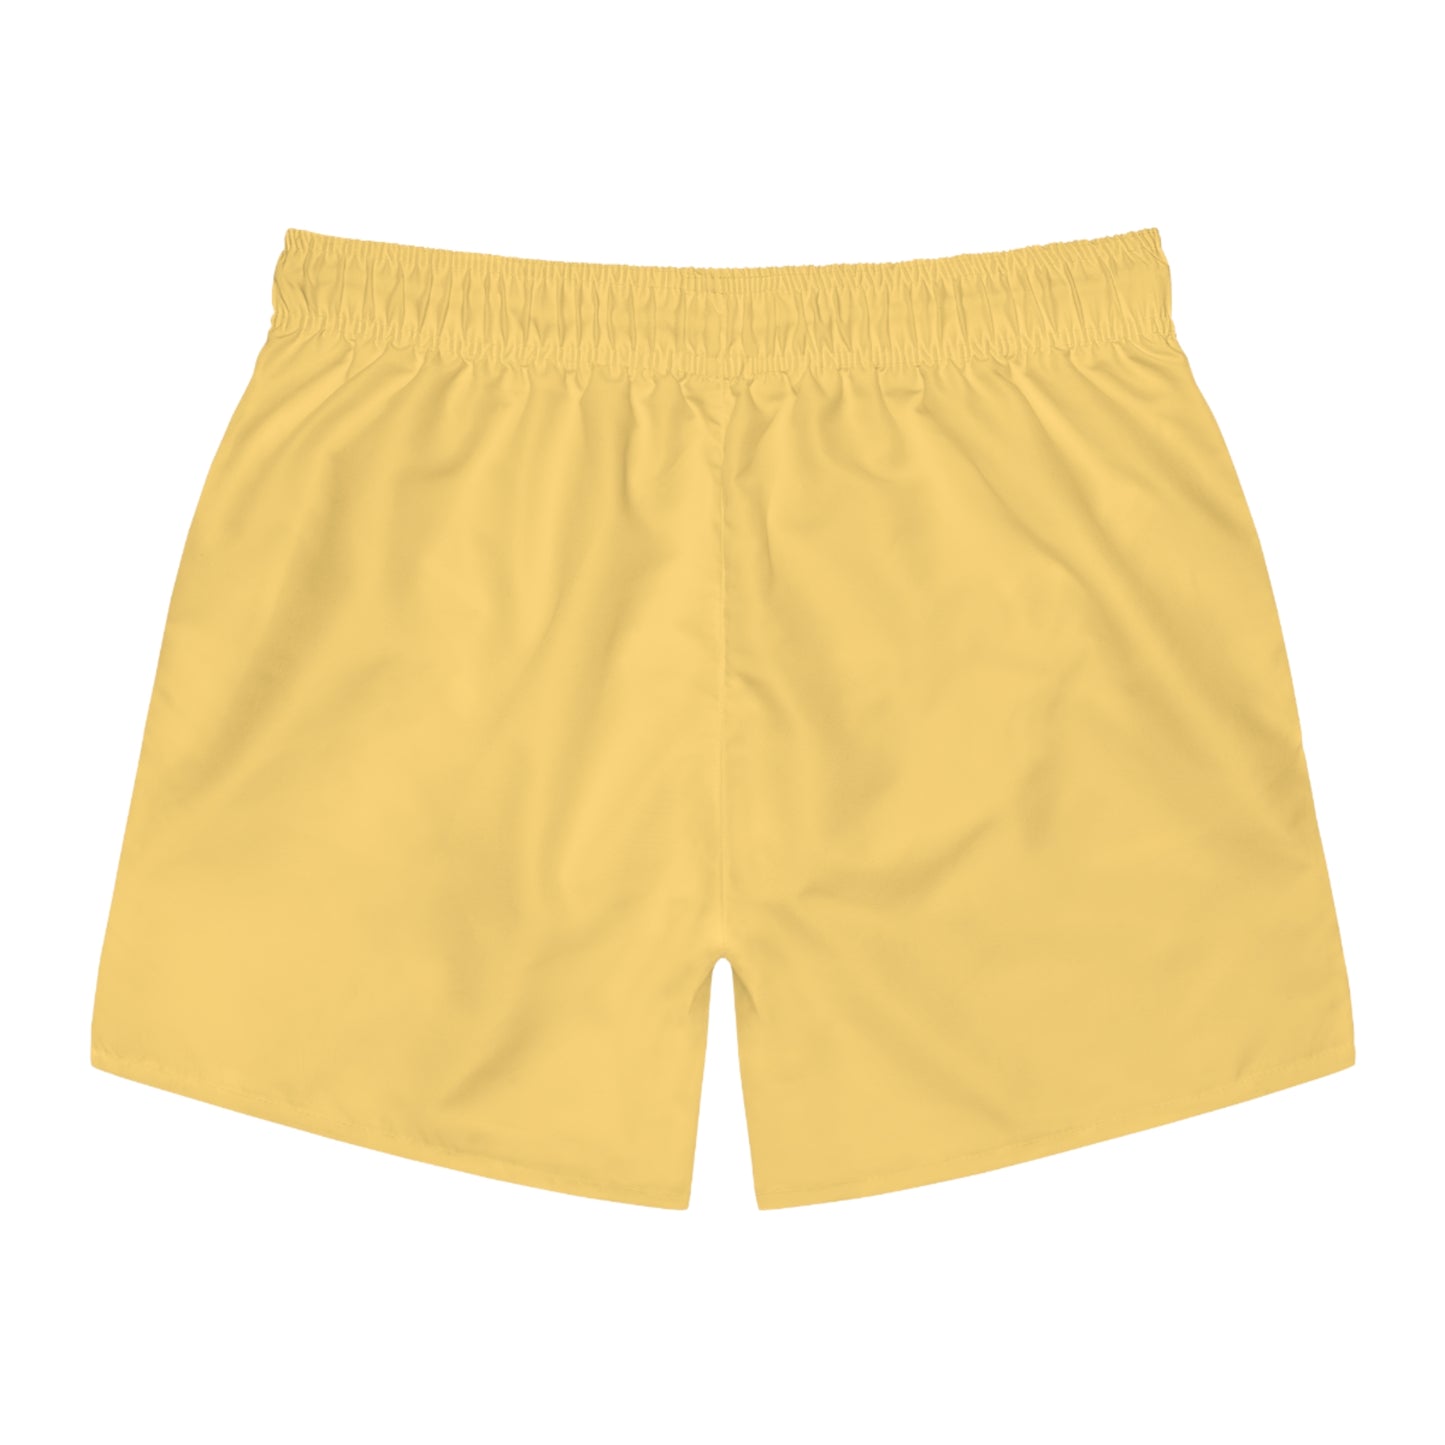 Swim Trunks - Canary Yellow